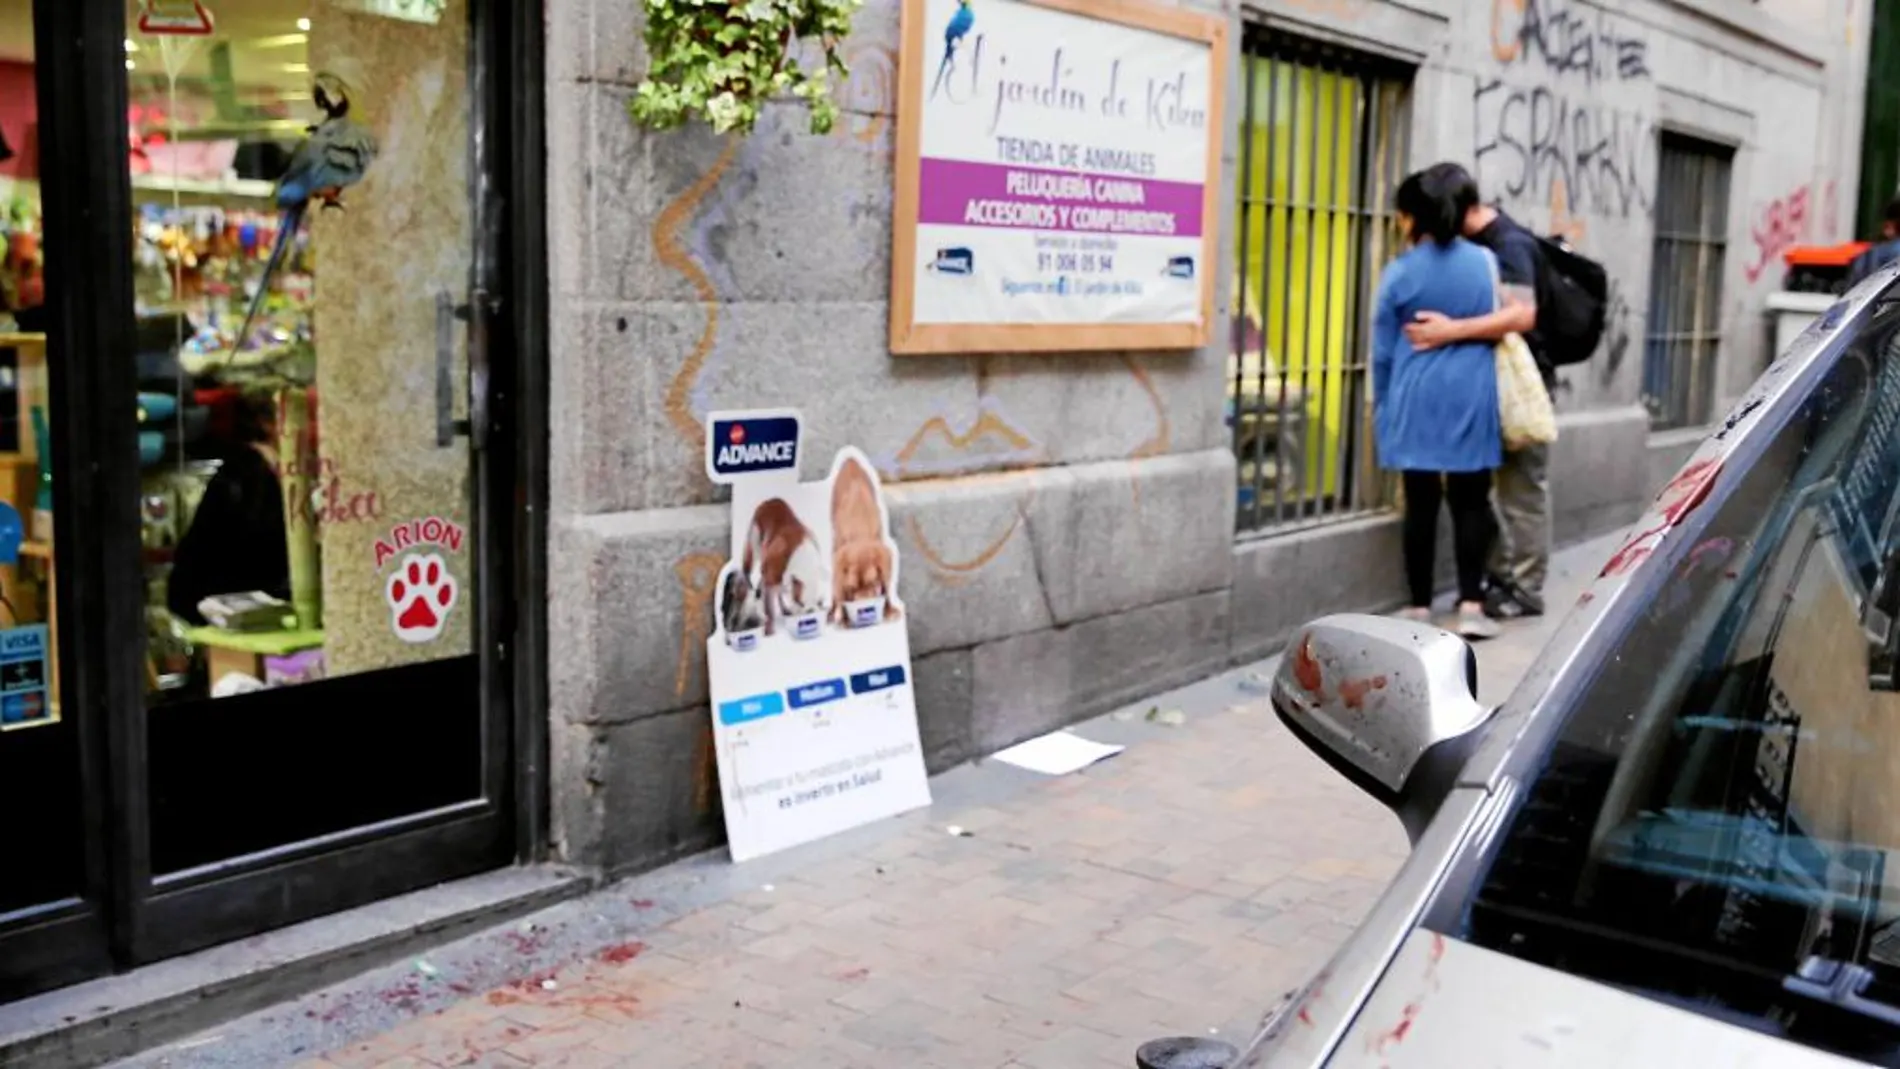 Los restos de sangre de Óscar Gallego, el propietario de El Jardín de Kika, se apreciaban ayer en uno de los coches aparcados a la entrada de la tienda